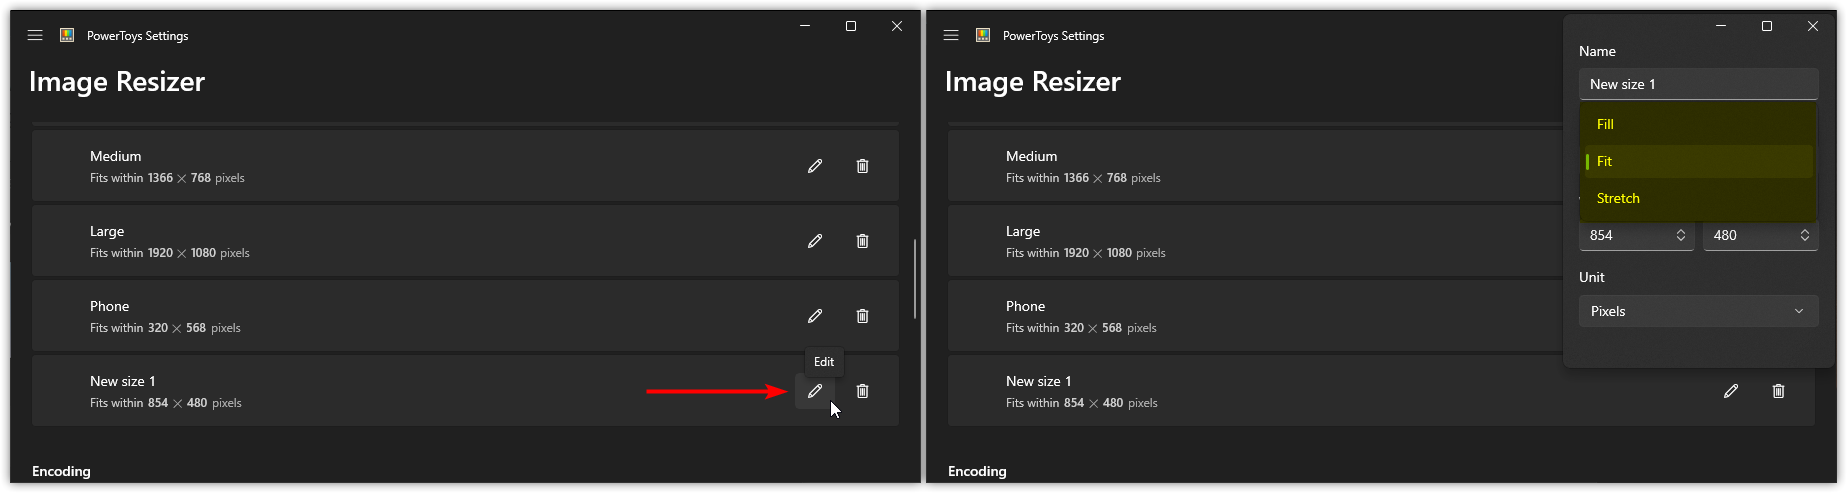 Customise new preset in Image resizer PowerToys